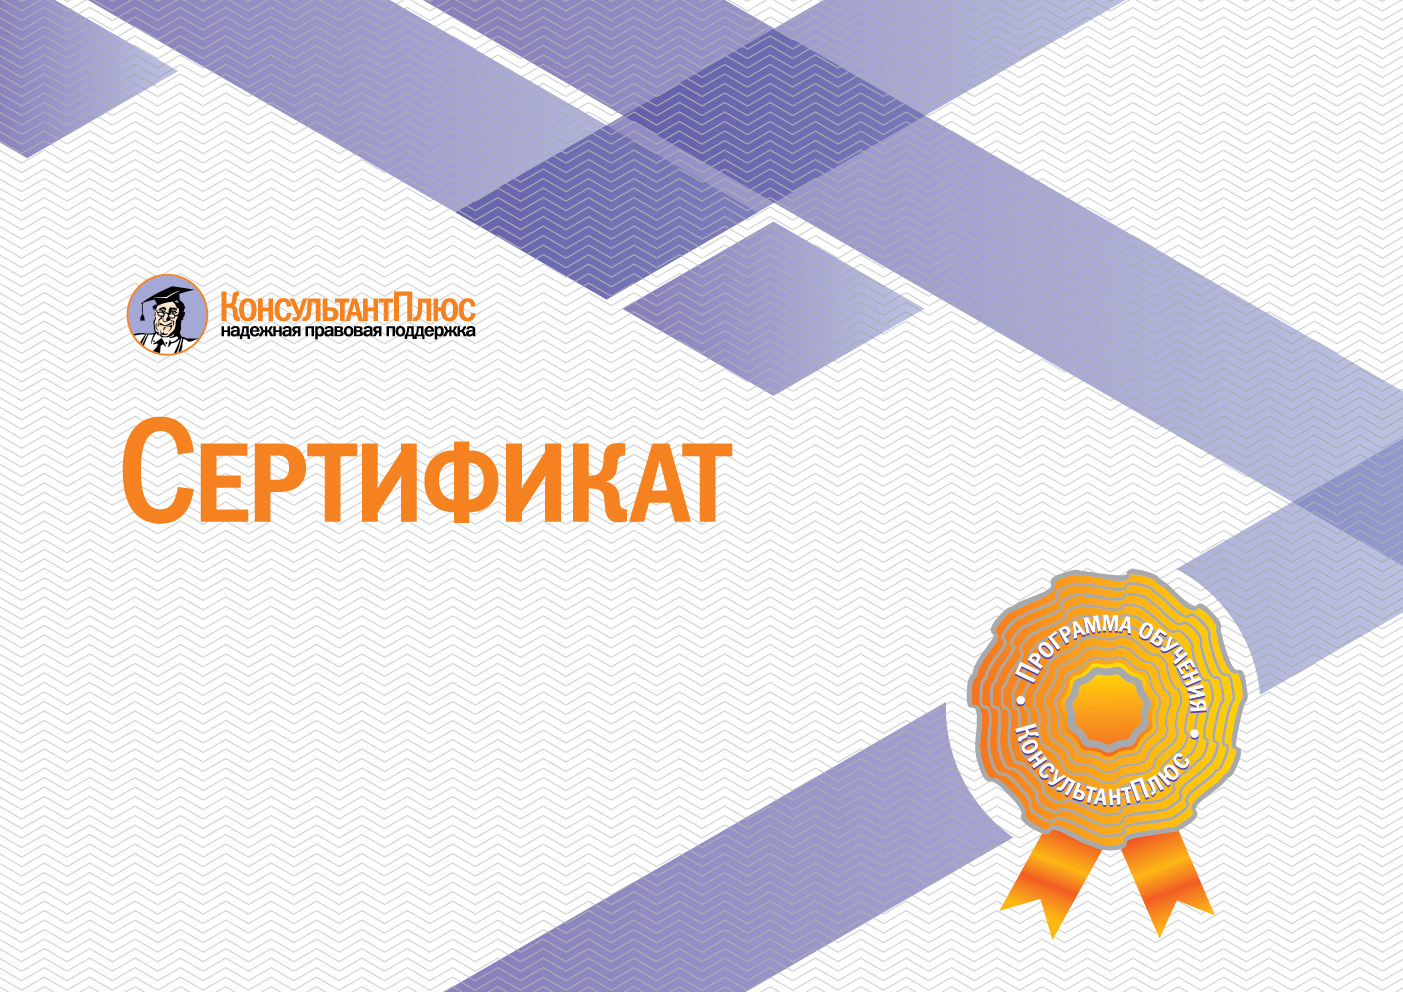 Сертификат КонсультантПлюс "Базовый"